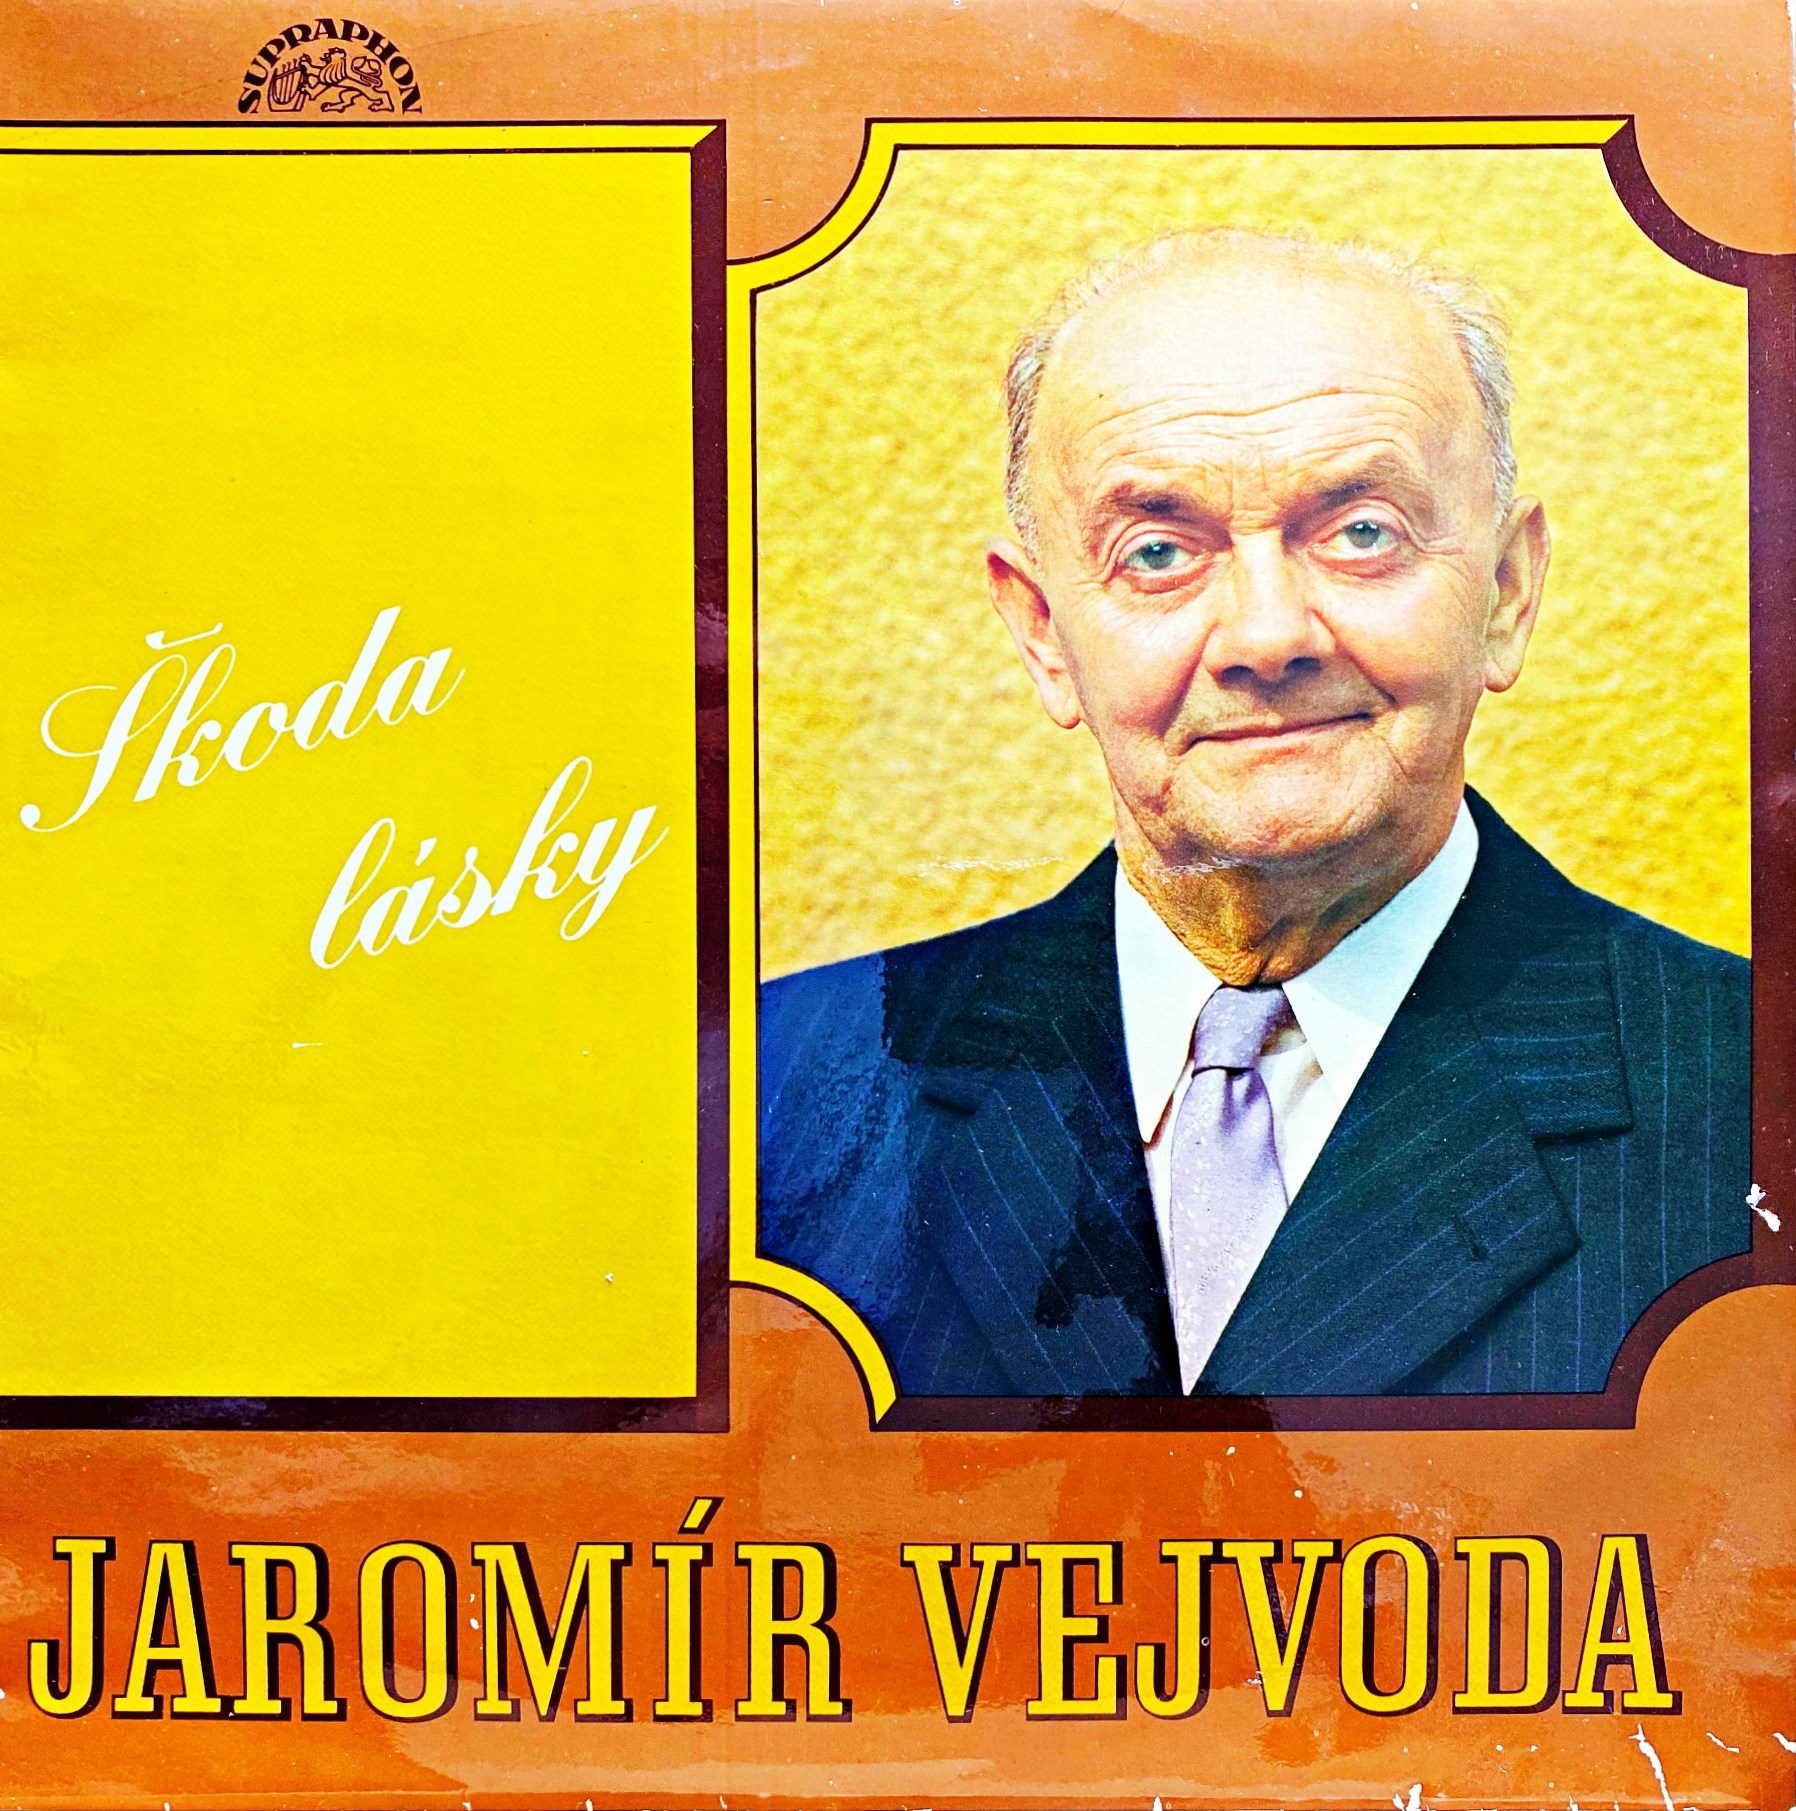 LP Jaromír Vejvoda ‎– Škoda Lásky